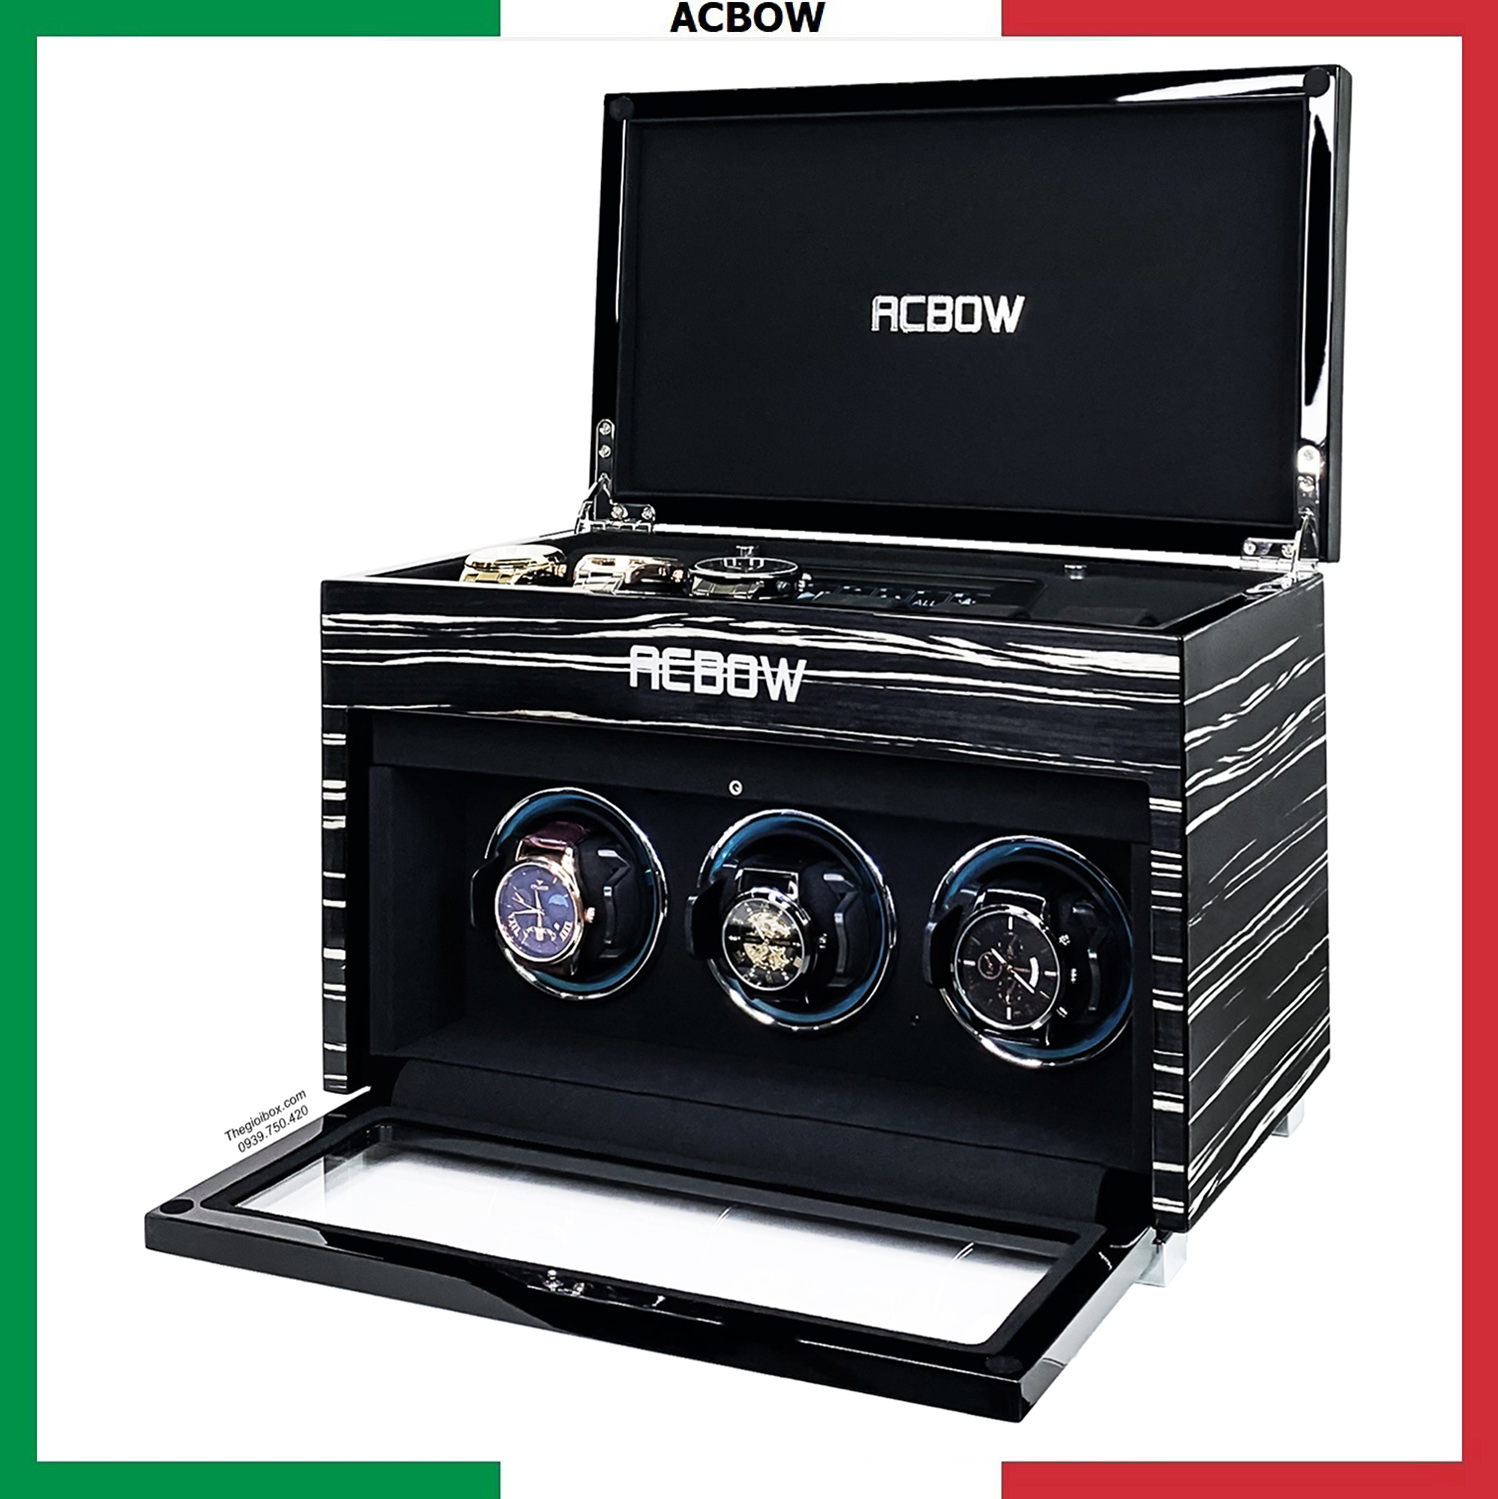 Tủ - Hộp đựng đồng hồ cơ ACBOW cao cấp - 3 xoay 6 tĩnh - kèm remote, màn hình cảm ứng và LED - vỏ gỗ màu granite sáng bóng